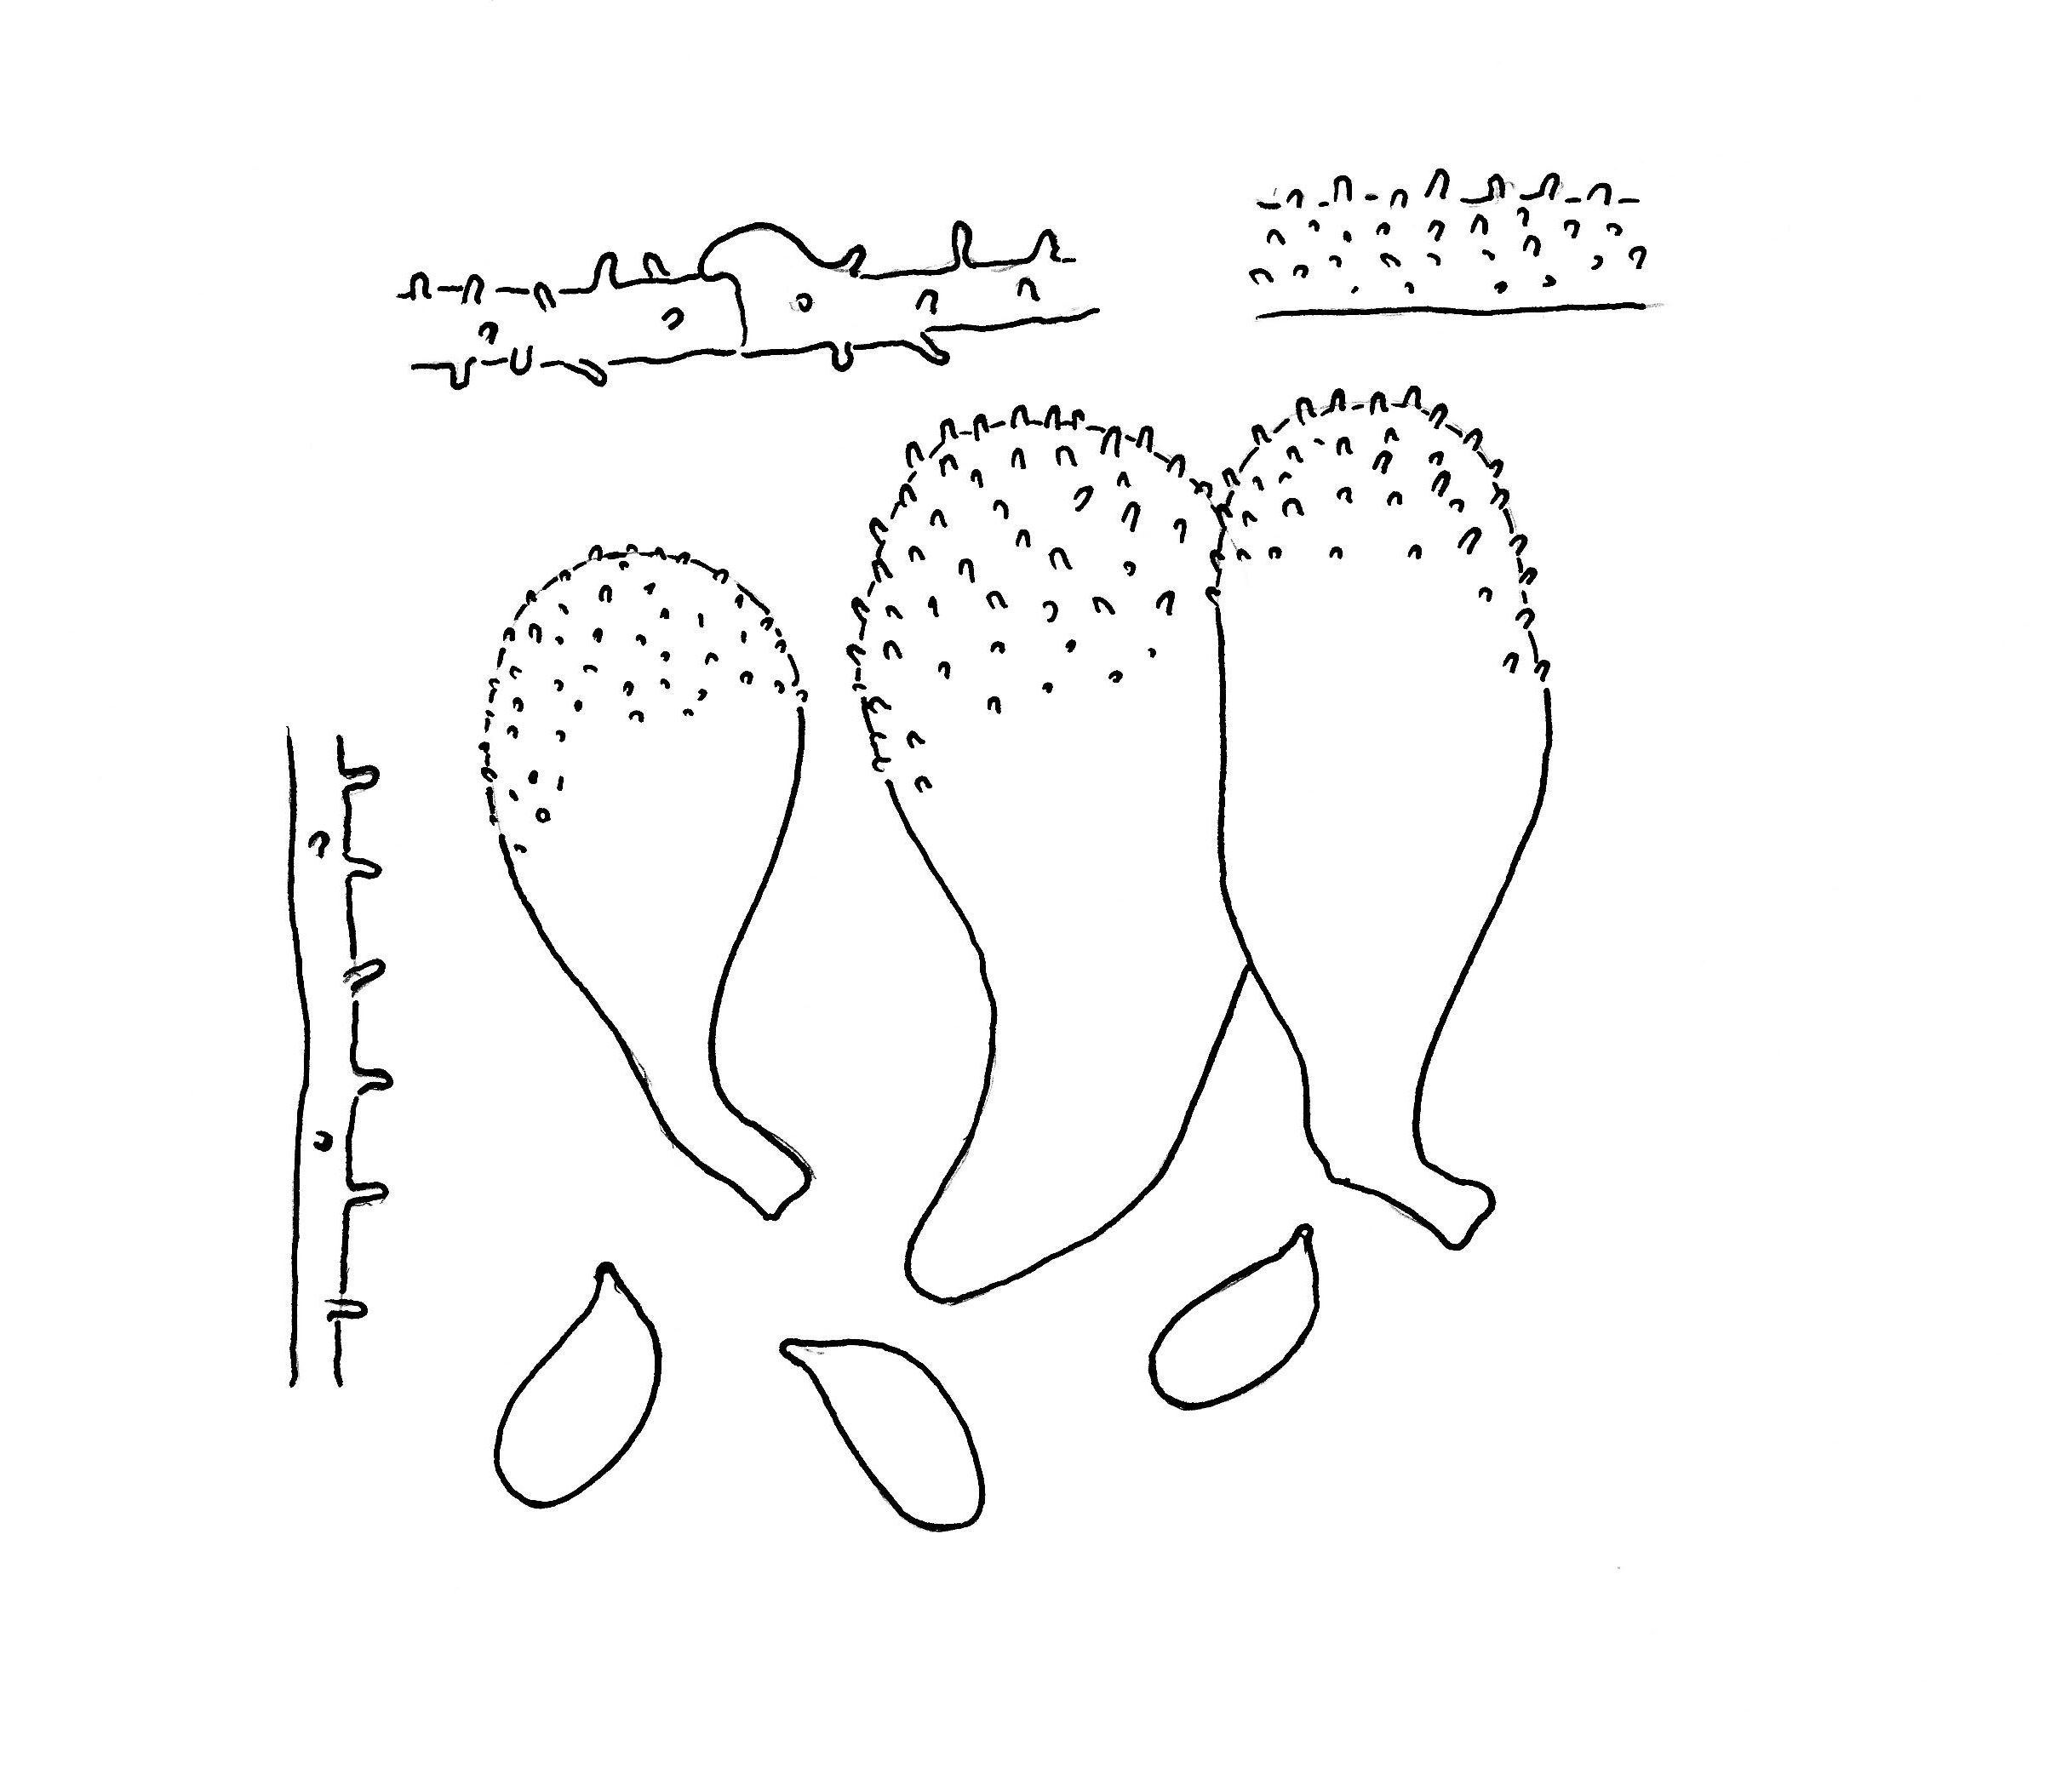 Stilksporesopper: Mycena flavescens.